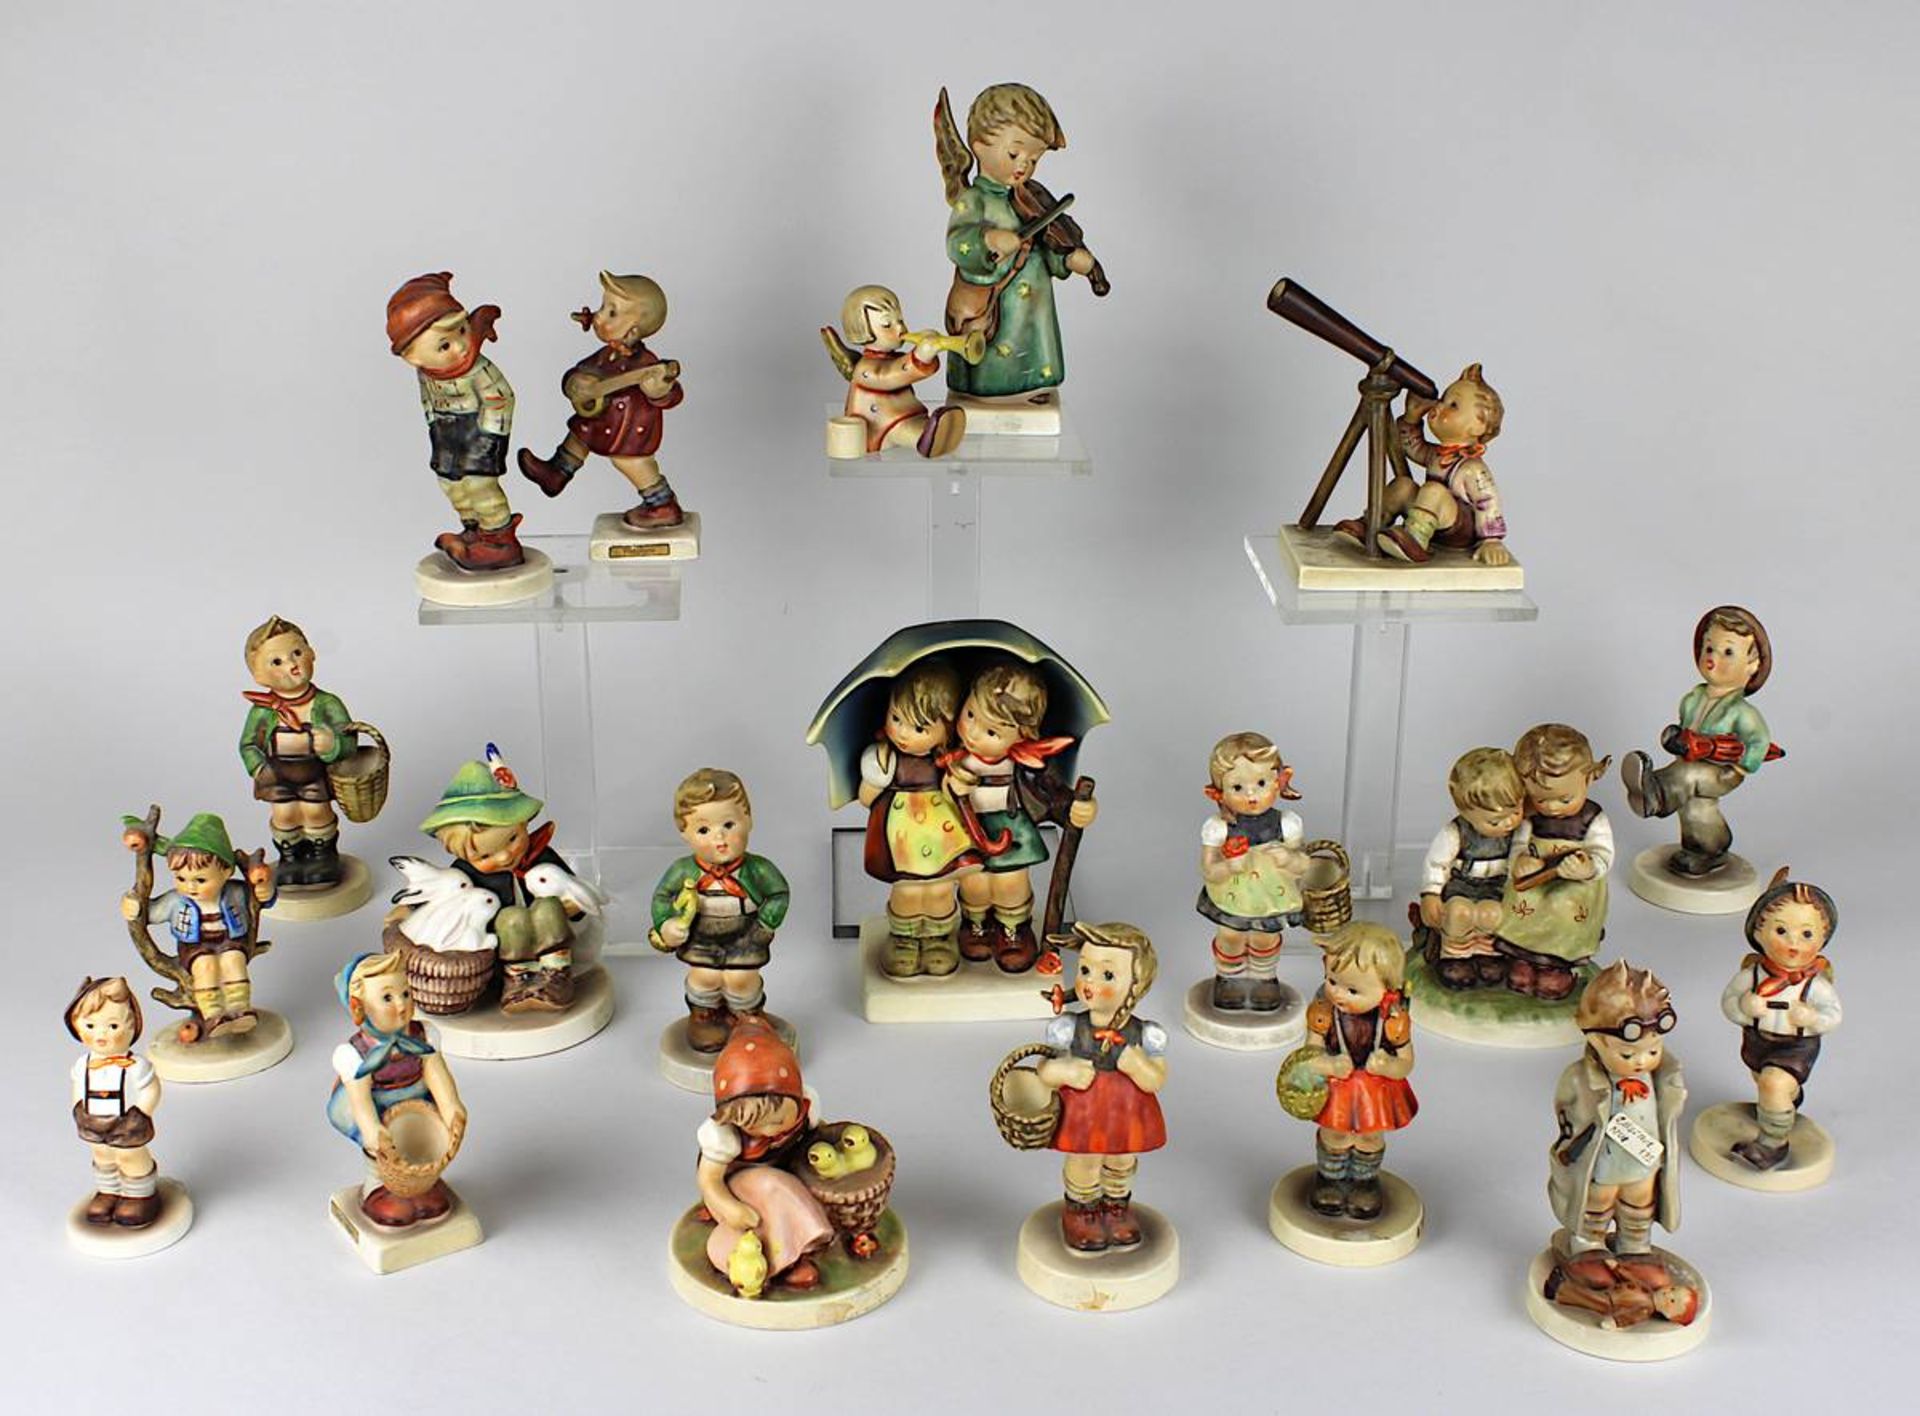 20 Hummel-Figuren, Goebel, 1960er bis 1990er Jahre, Keramikfiguren, farbig staffiert, u.a. "